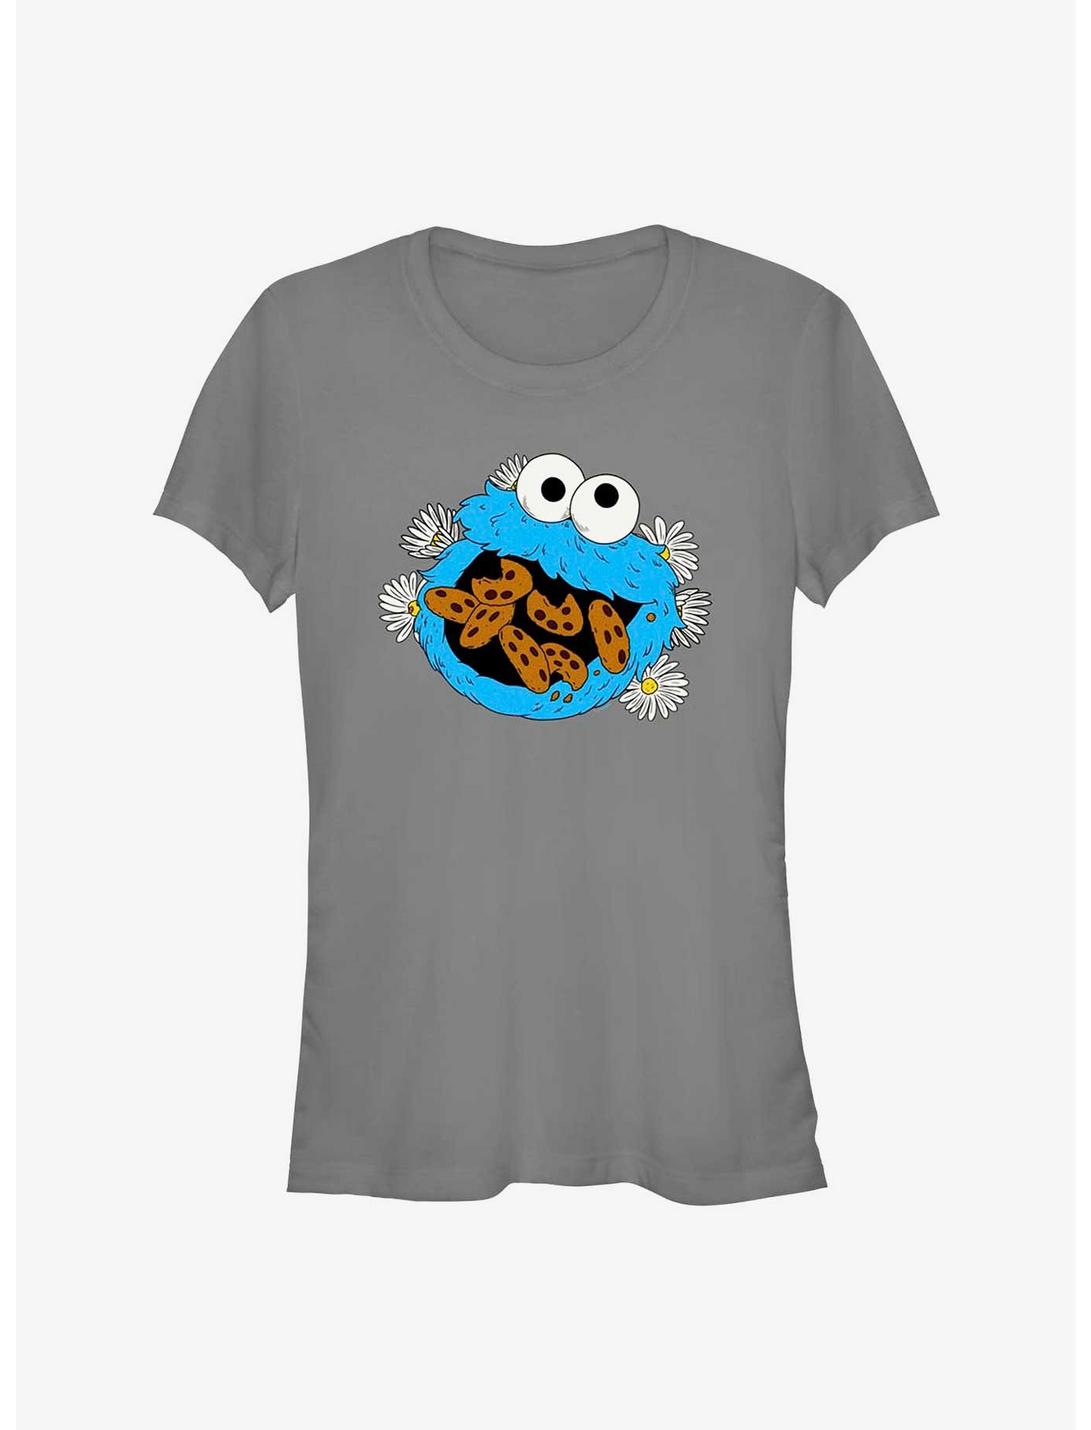 womens cookie monster shirt